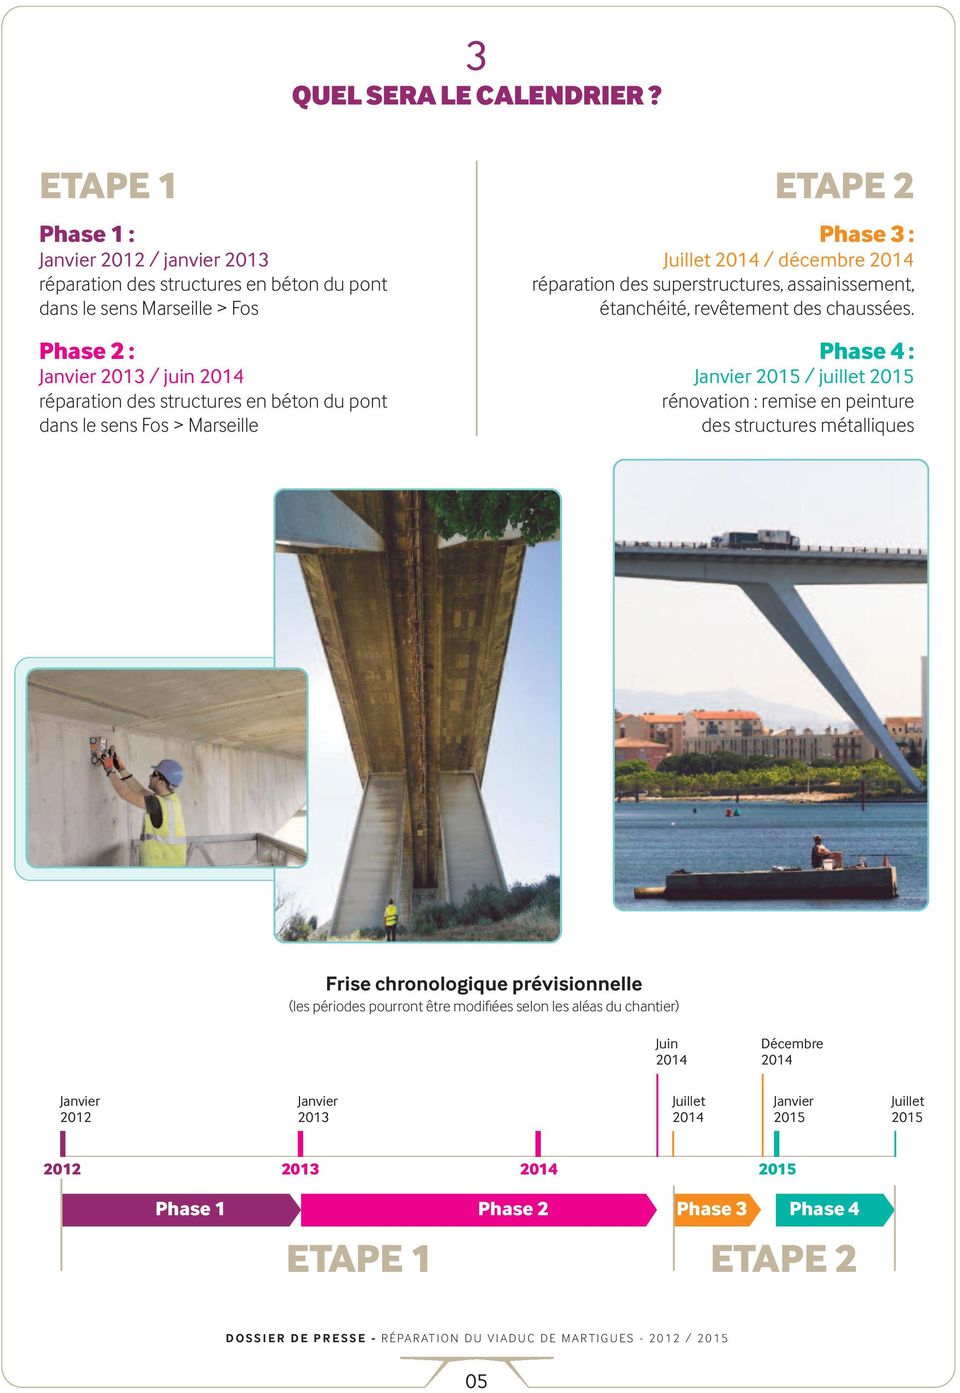 béton du pont dans le sens Fos > Marseille ETAPE 2 Phase 3 : Juillet 2014 / décembre 2014 réparation des superstructures, assainissement, étanchéité, revêtement des chaussées.